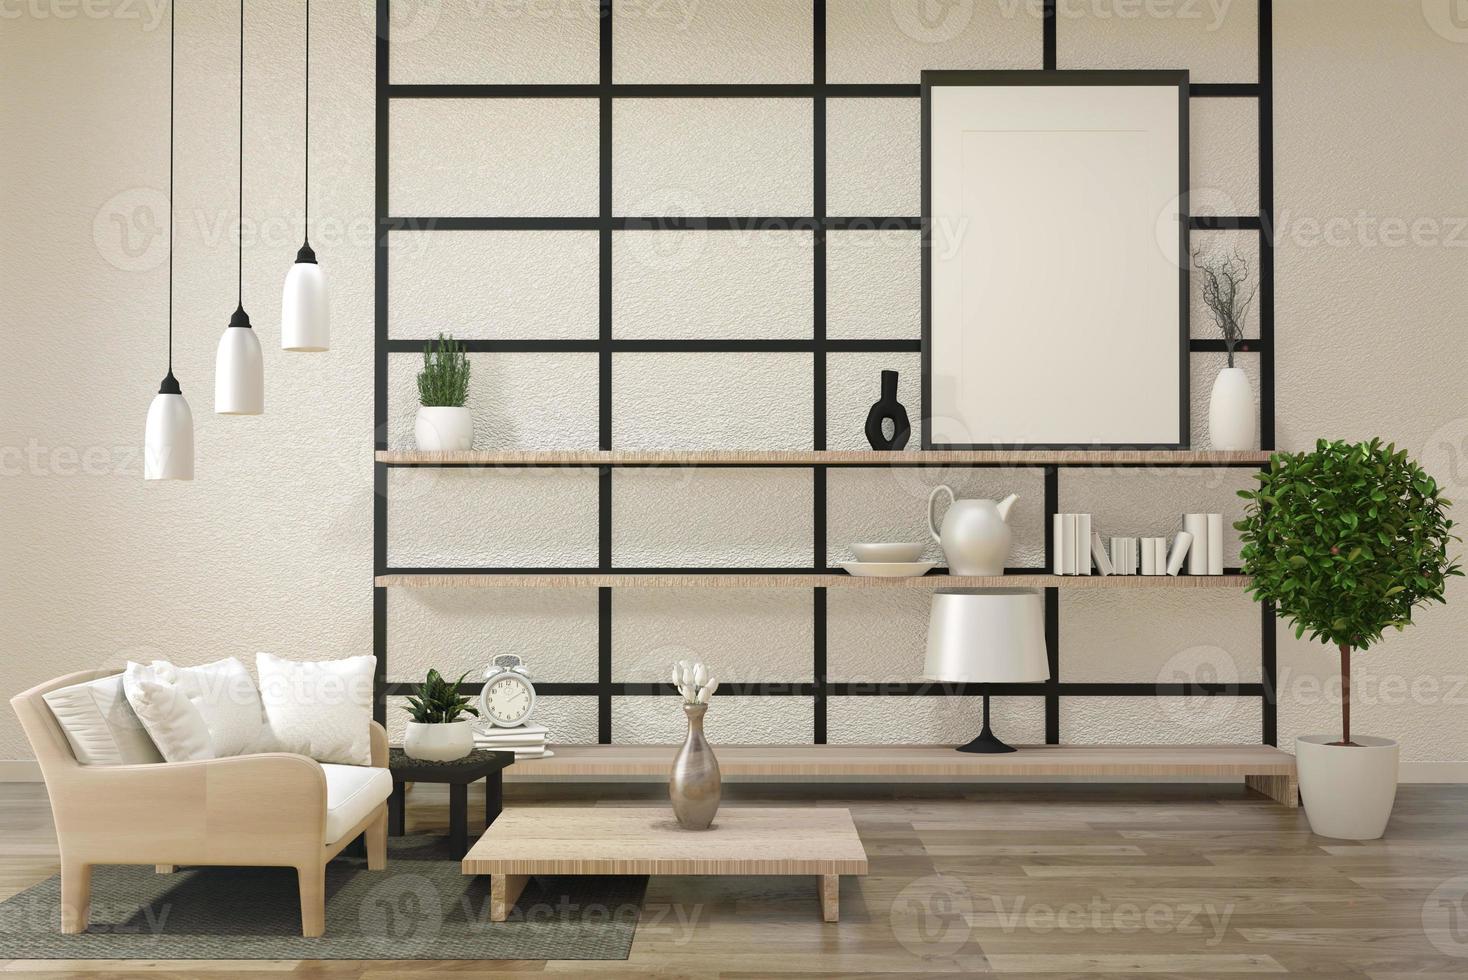 salon zen moderne et minimaliste avec parquet et décoration de style japonais.rendu 3d photo